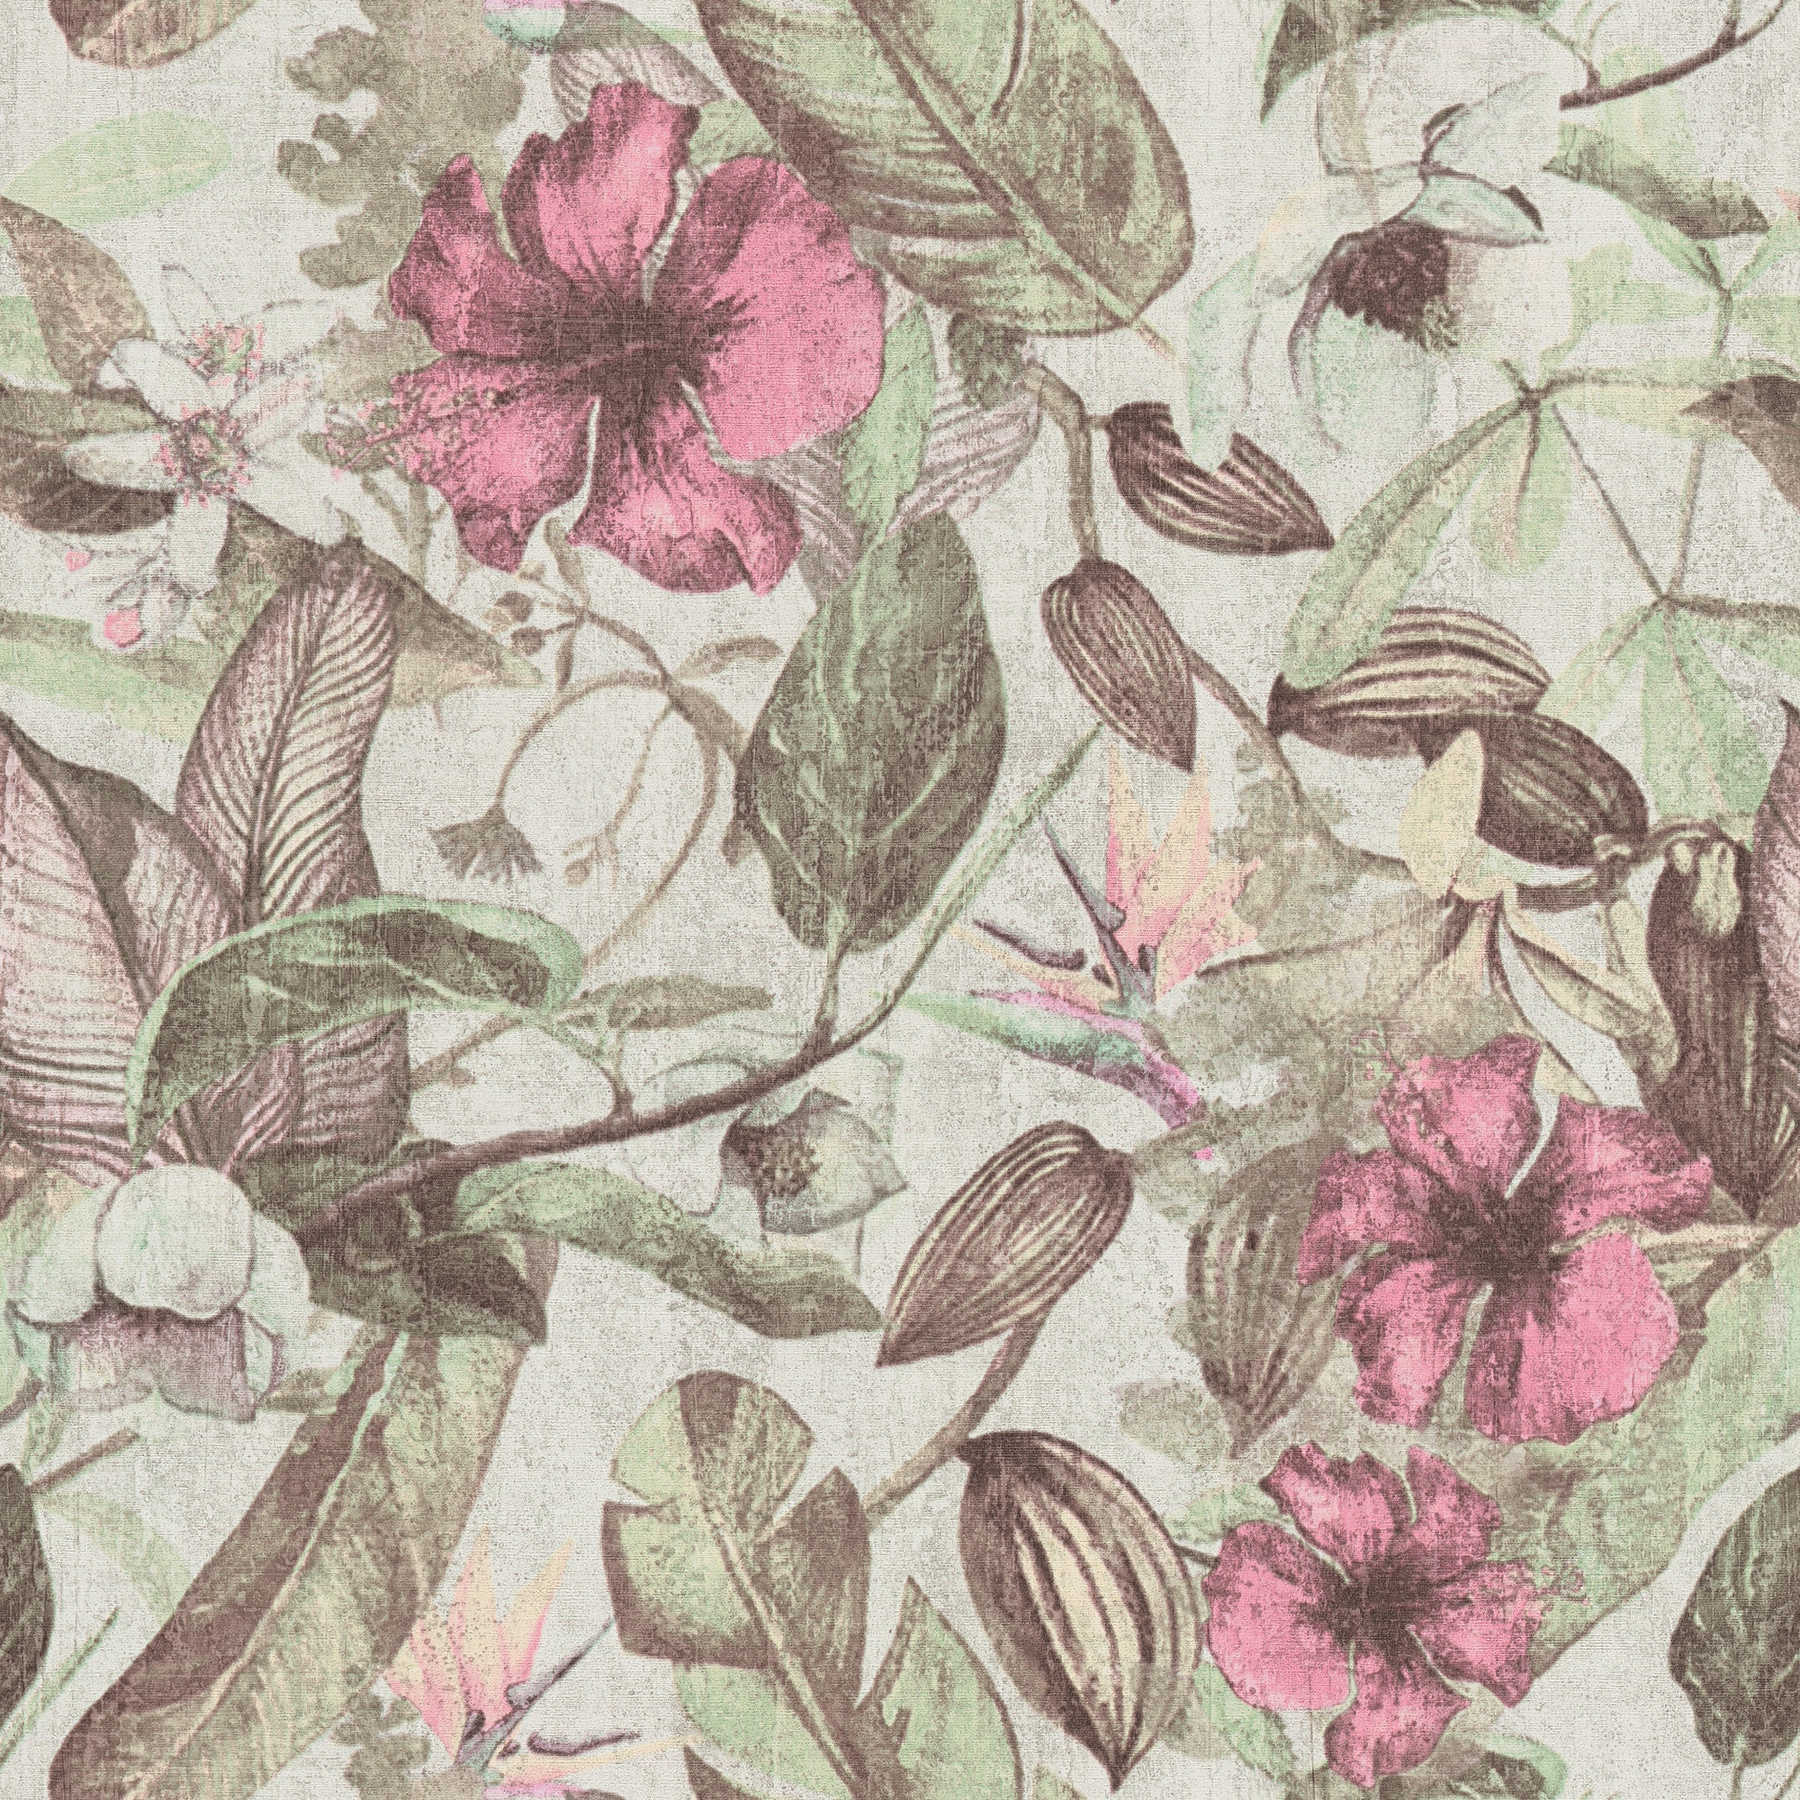 behang bloemenpatroon, tropische stijl & textiel look - roze, groen, bruin
